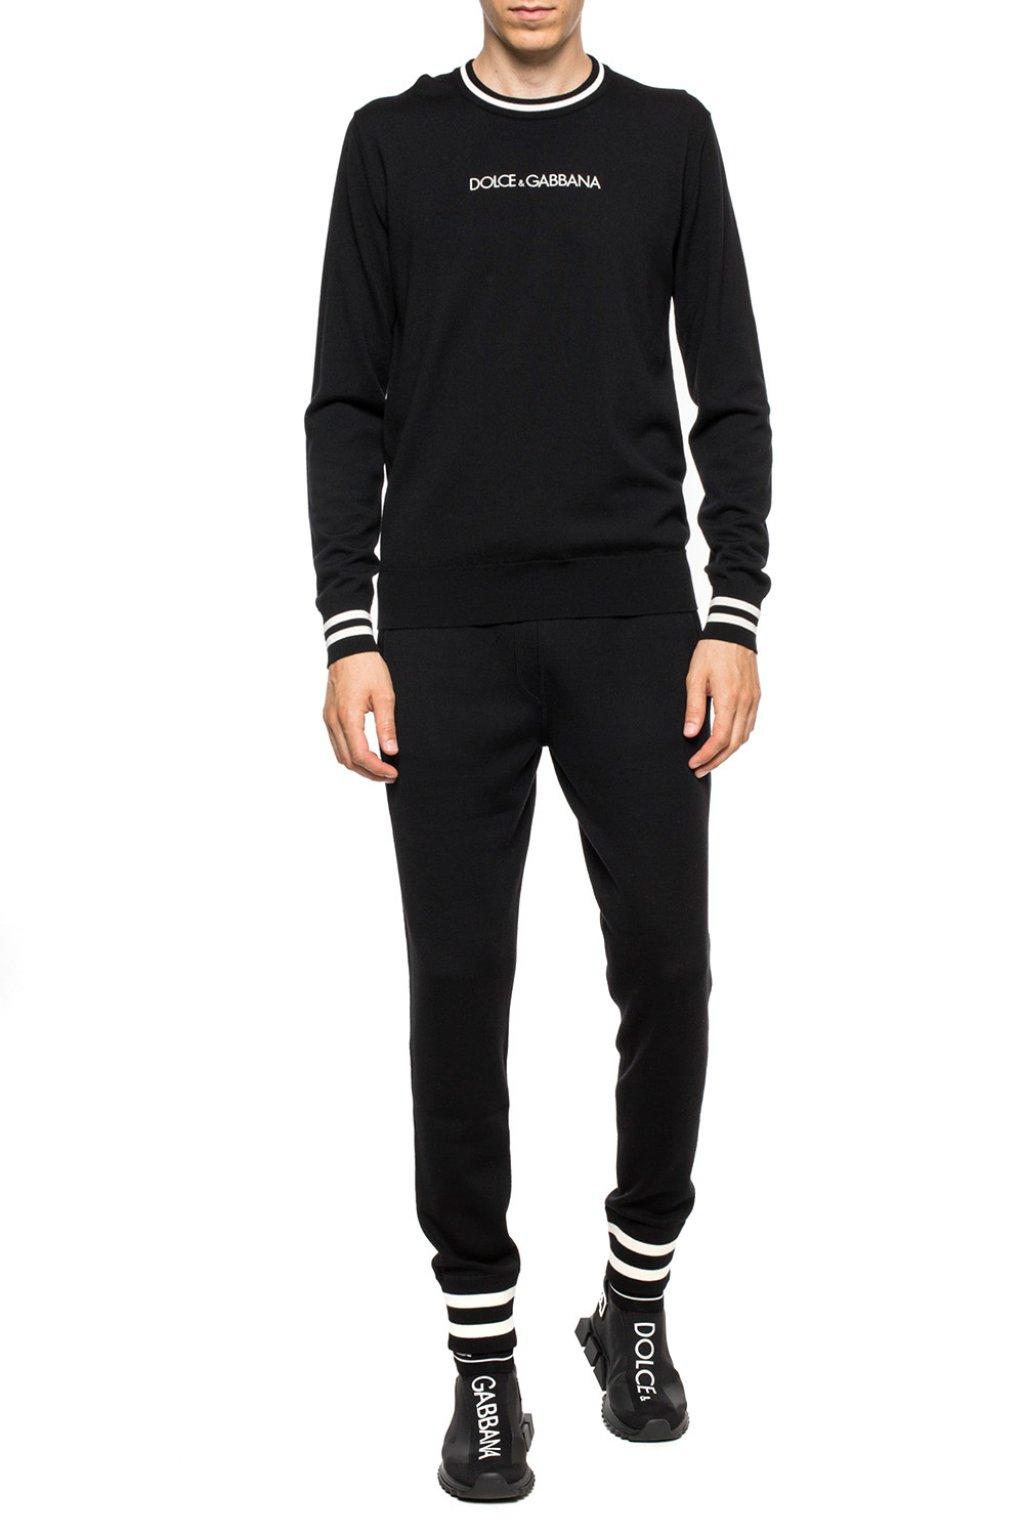 Dolce & Gabbana Wool Striped Sweatpants in Black for Men - Lyst